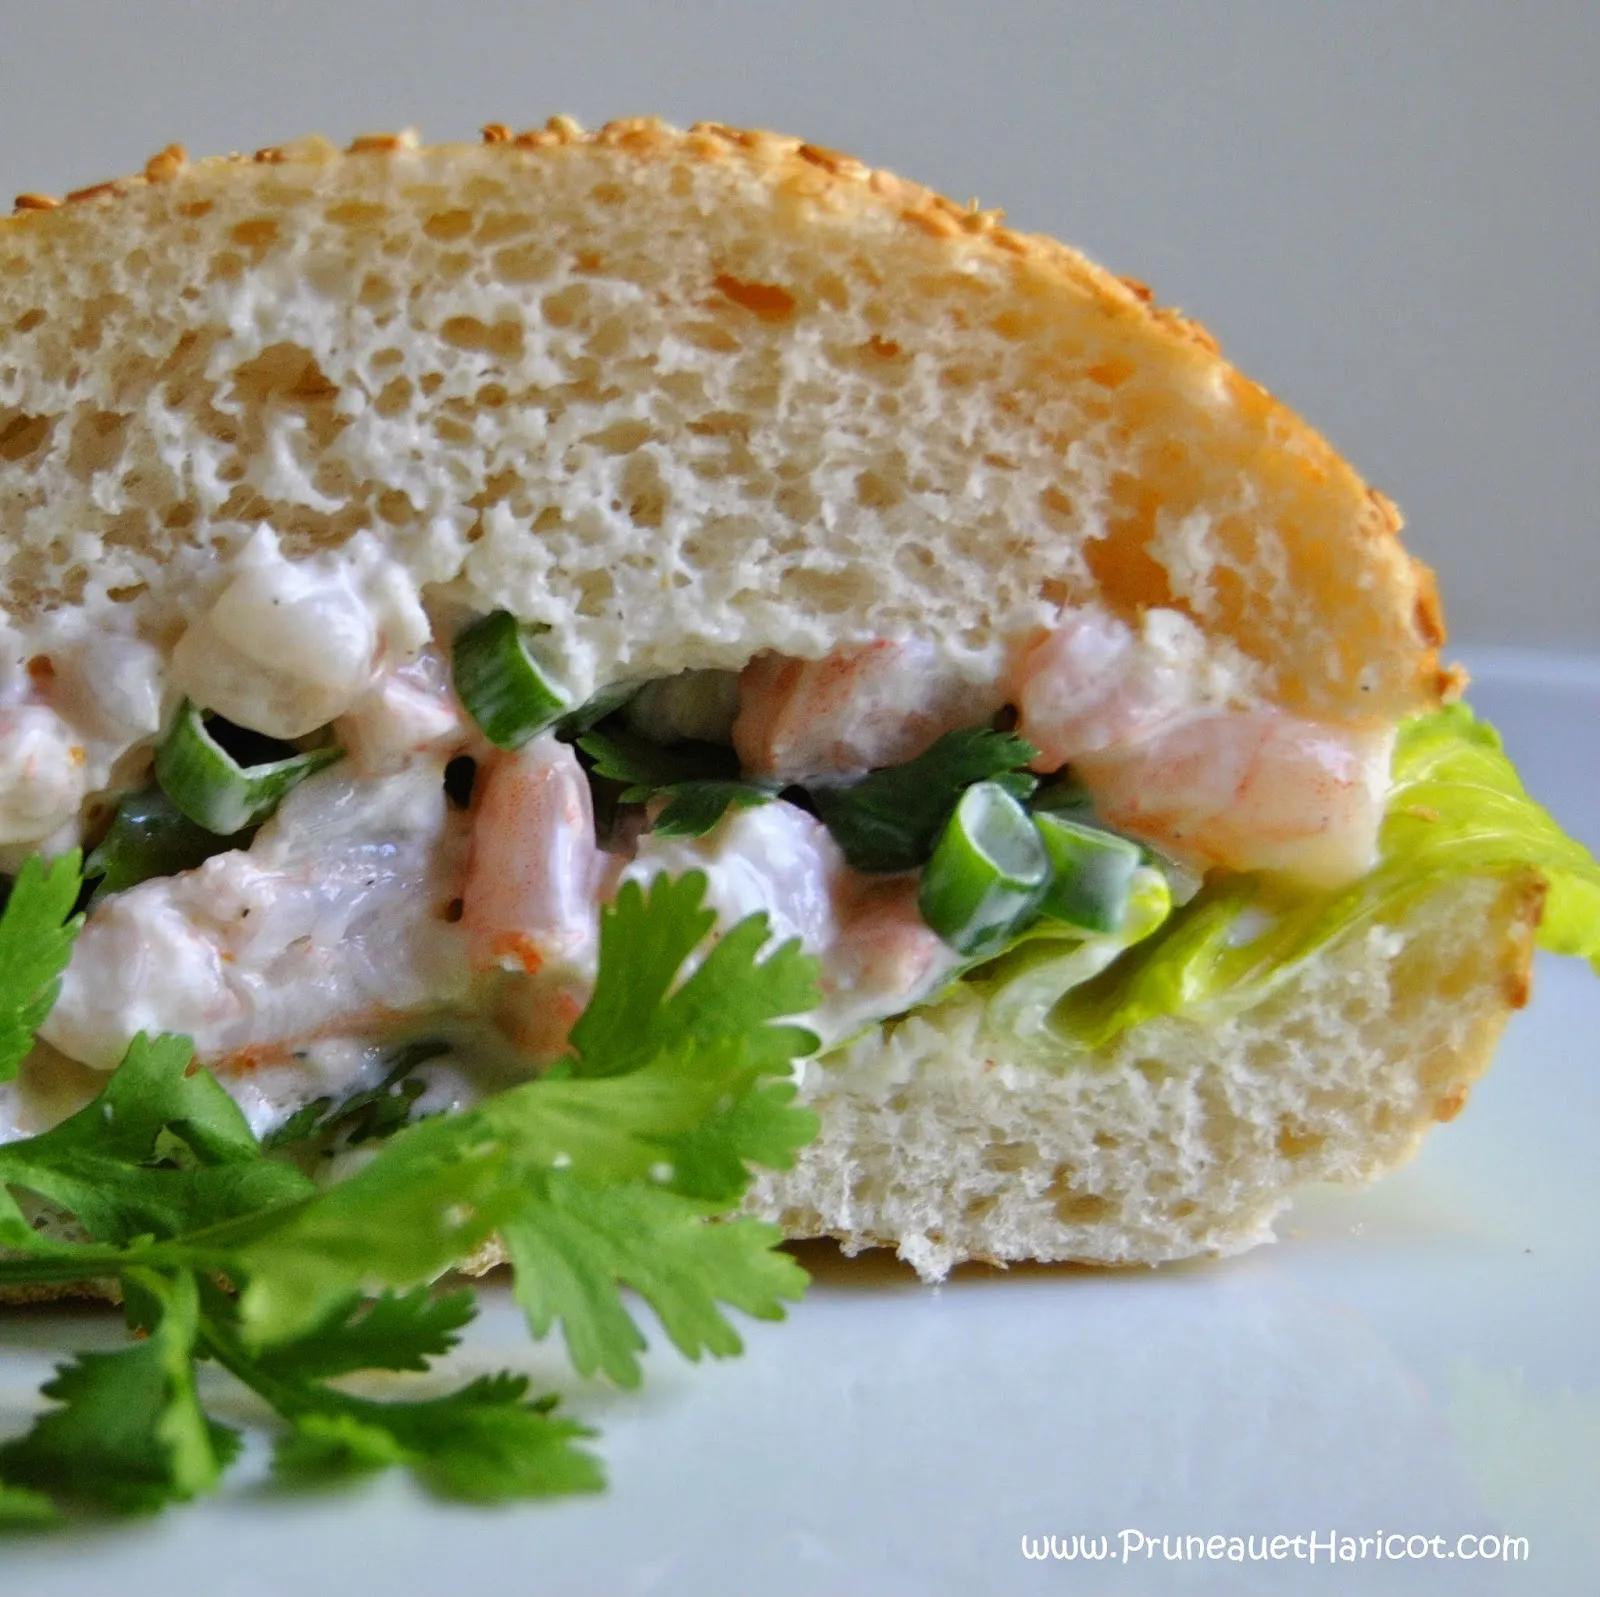 Pruneau et Haricot: Sandwich aux crevettes et ses deux coriandres